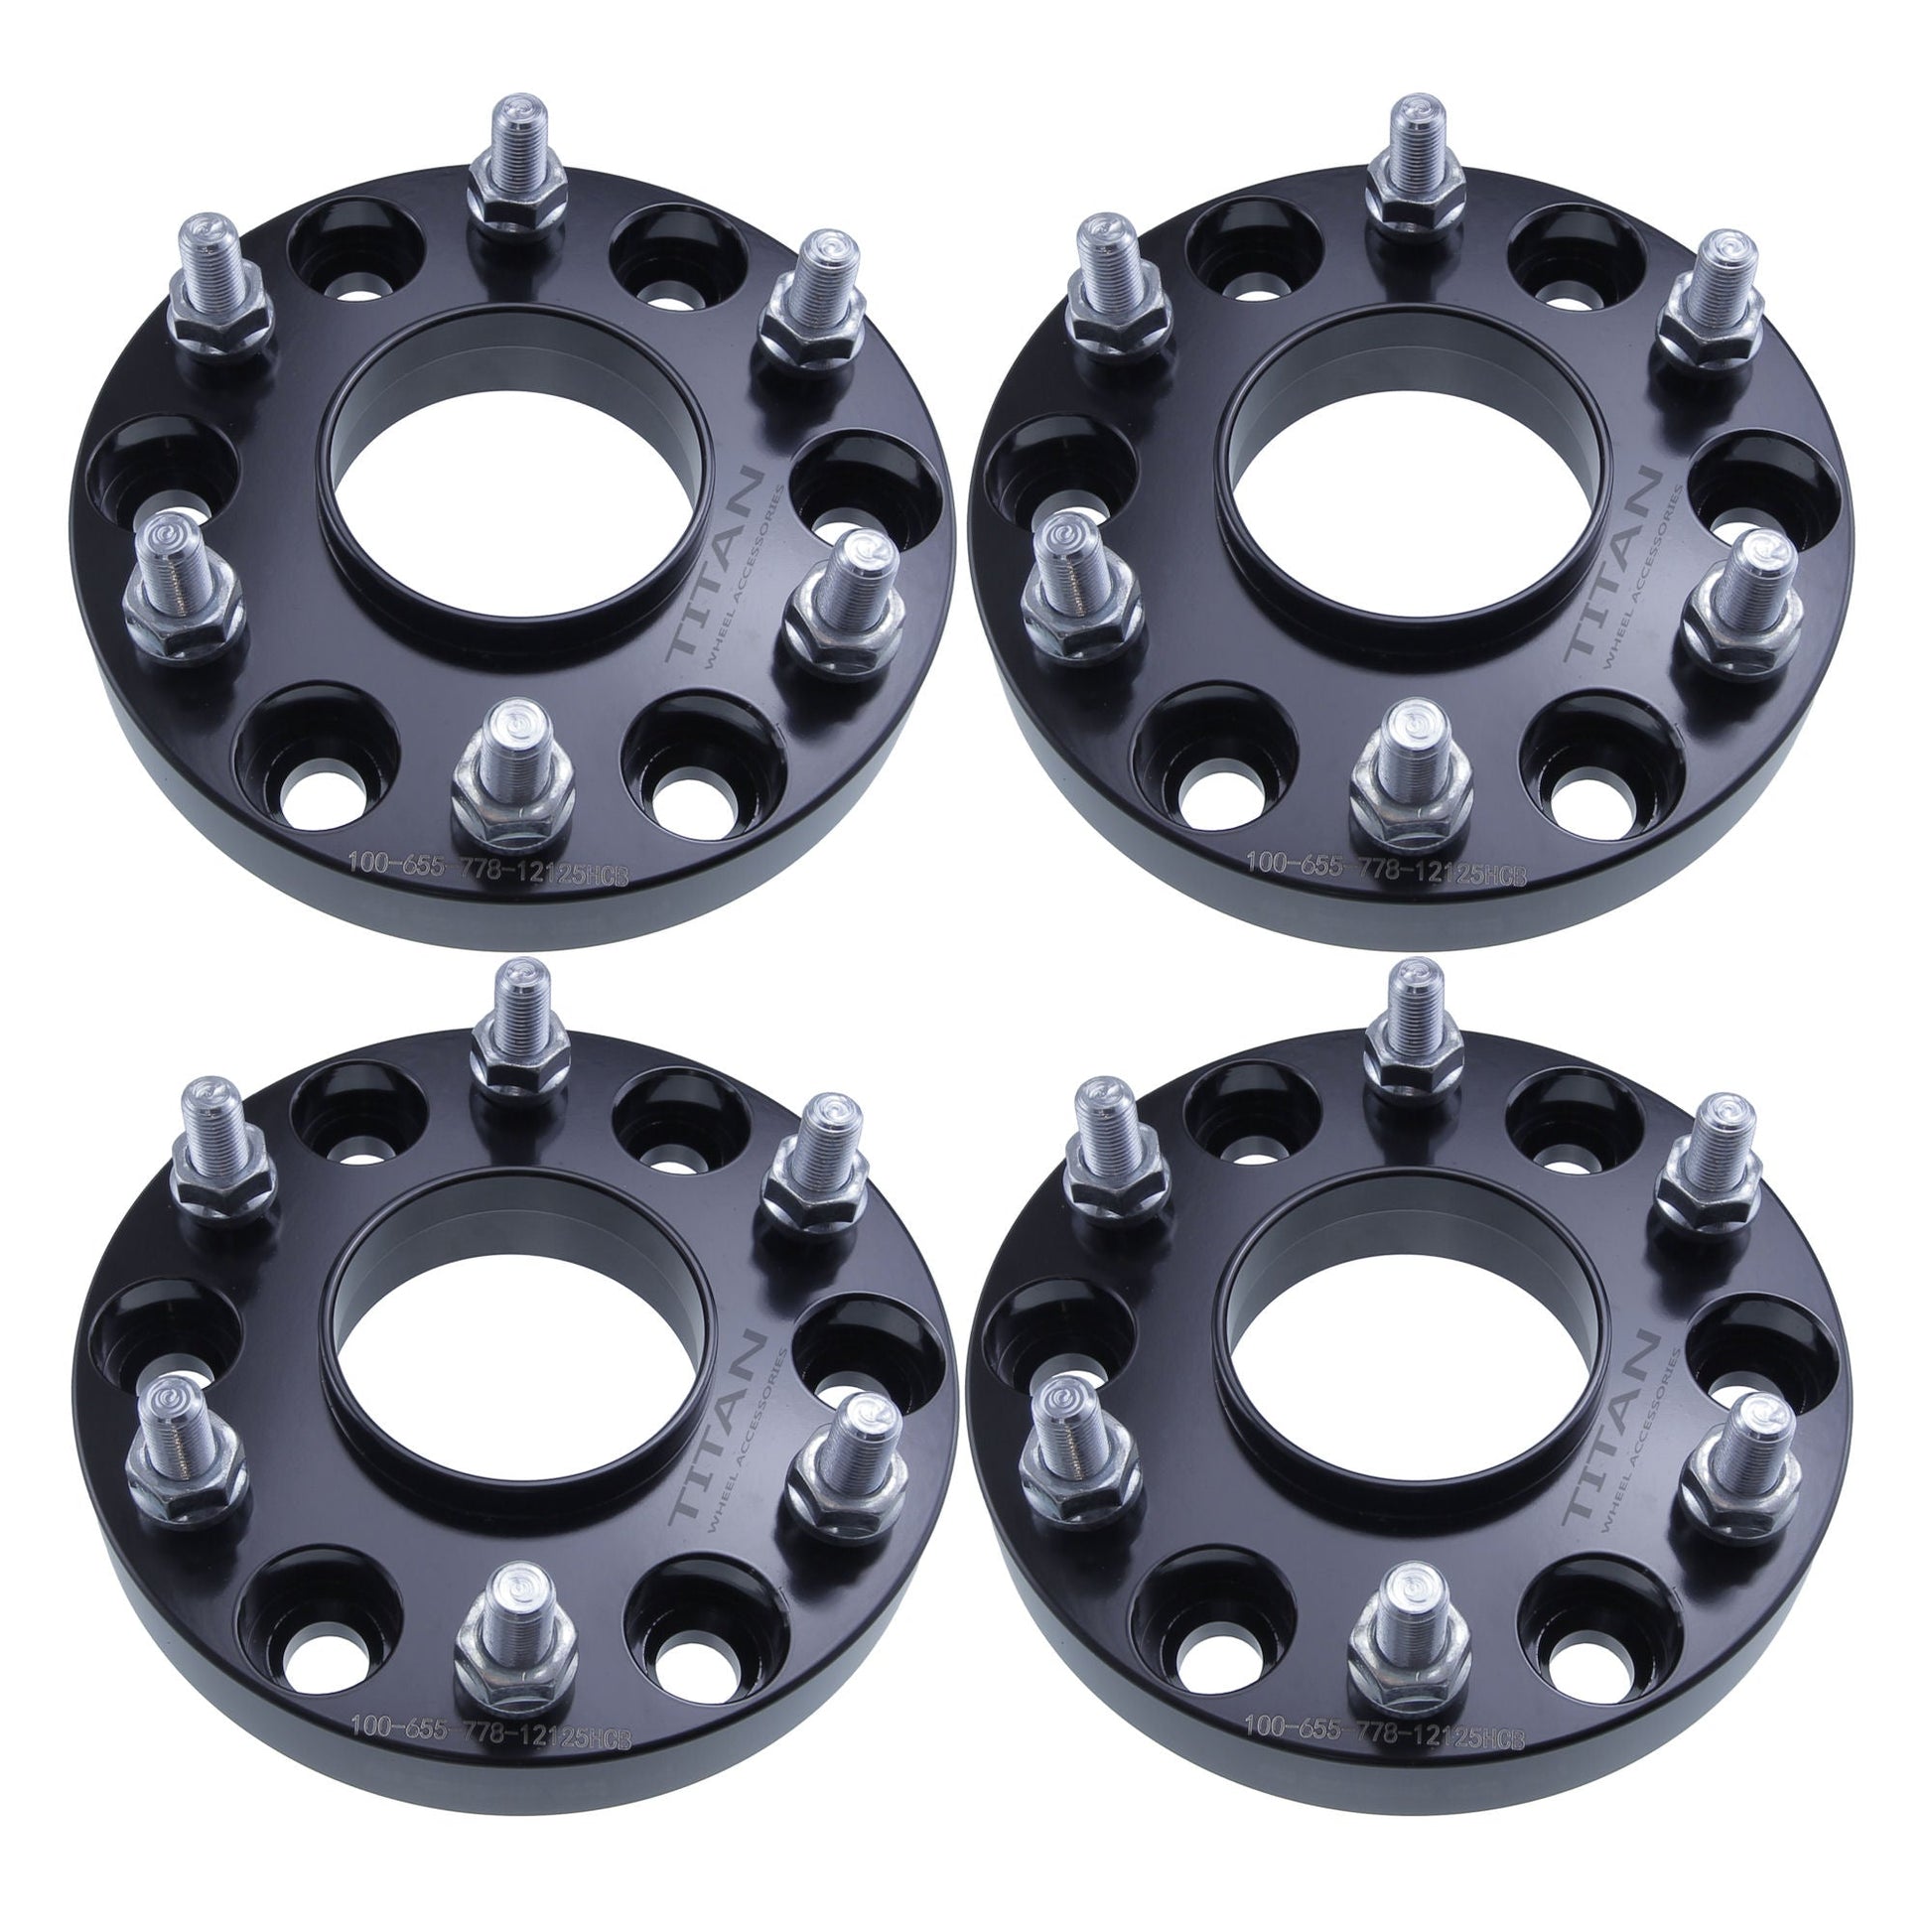 1" (25mm) Titan Wheel Spacers for Infiniti QX56 Nissan Armada Titan | 6x5.5 (6x139.7) | 77.8 Hubcentric |12x1.25 Studs |  Set of 4 | Titan Wheel Accessories